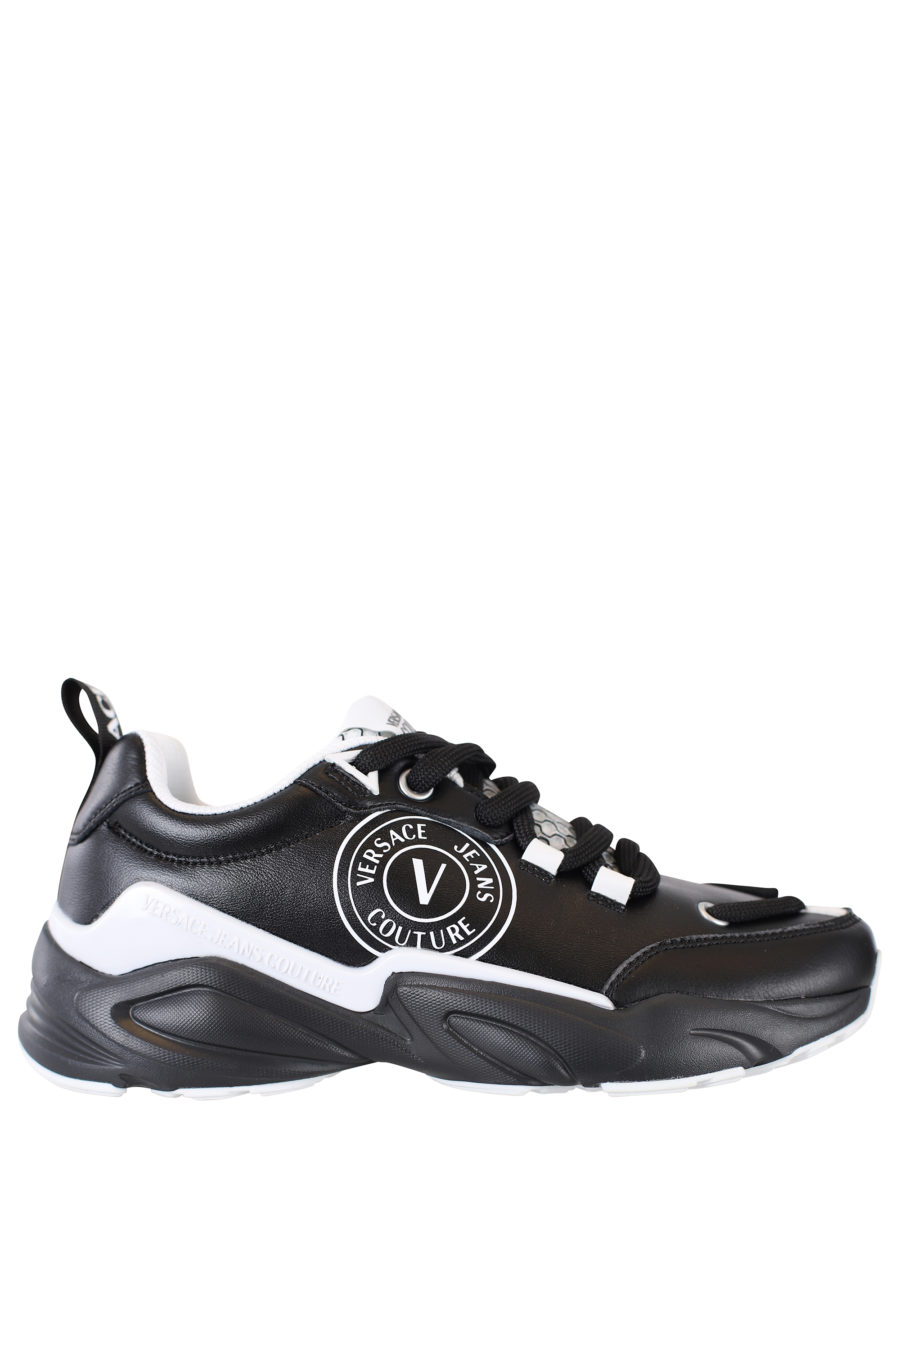 Zapatillas negras con detalles blancos "Wave" - IMG 2179